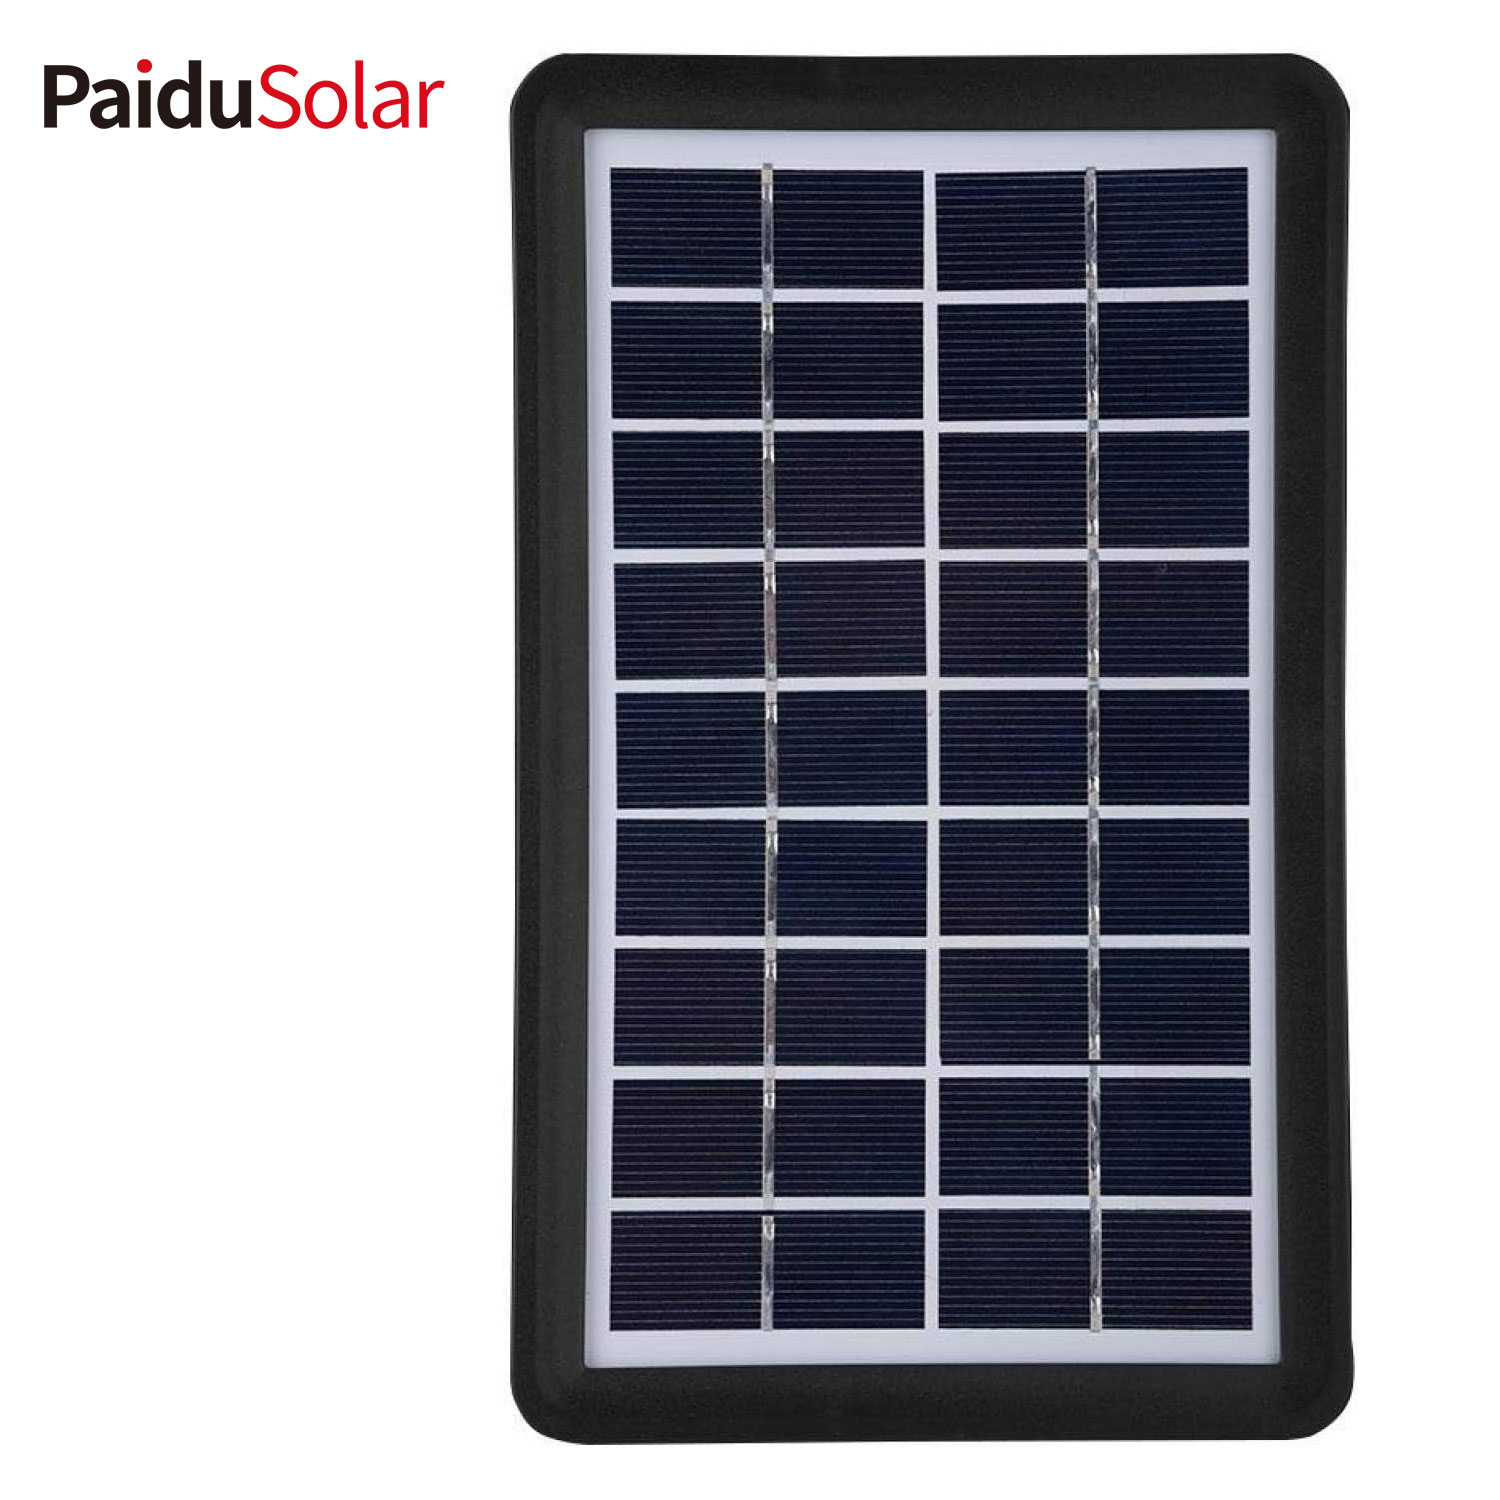 Célula solar del panel solar del silicio polivinílico de PaiduSolar 9V 3W para el barco de carga de batería